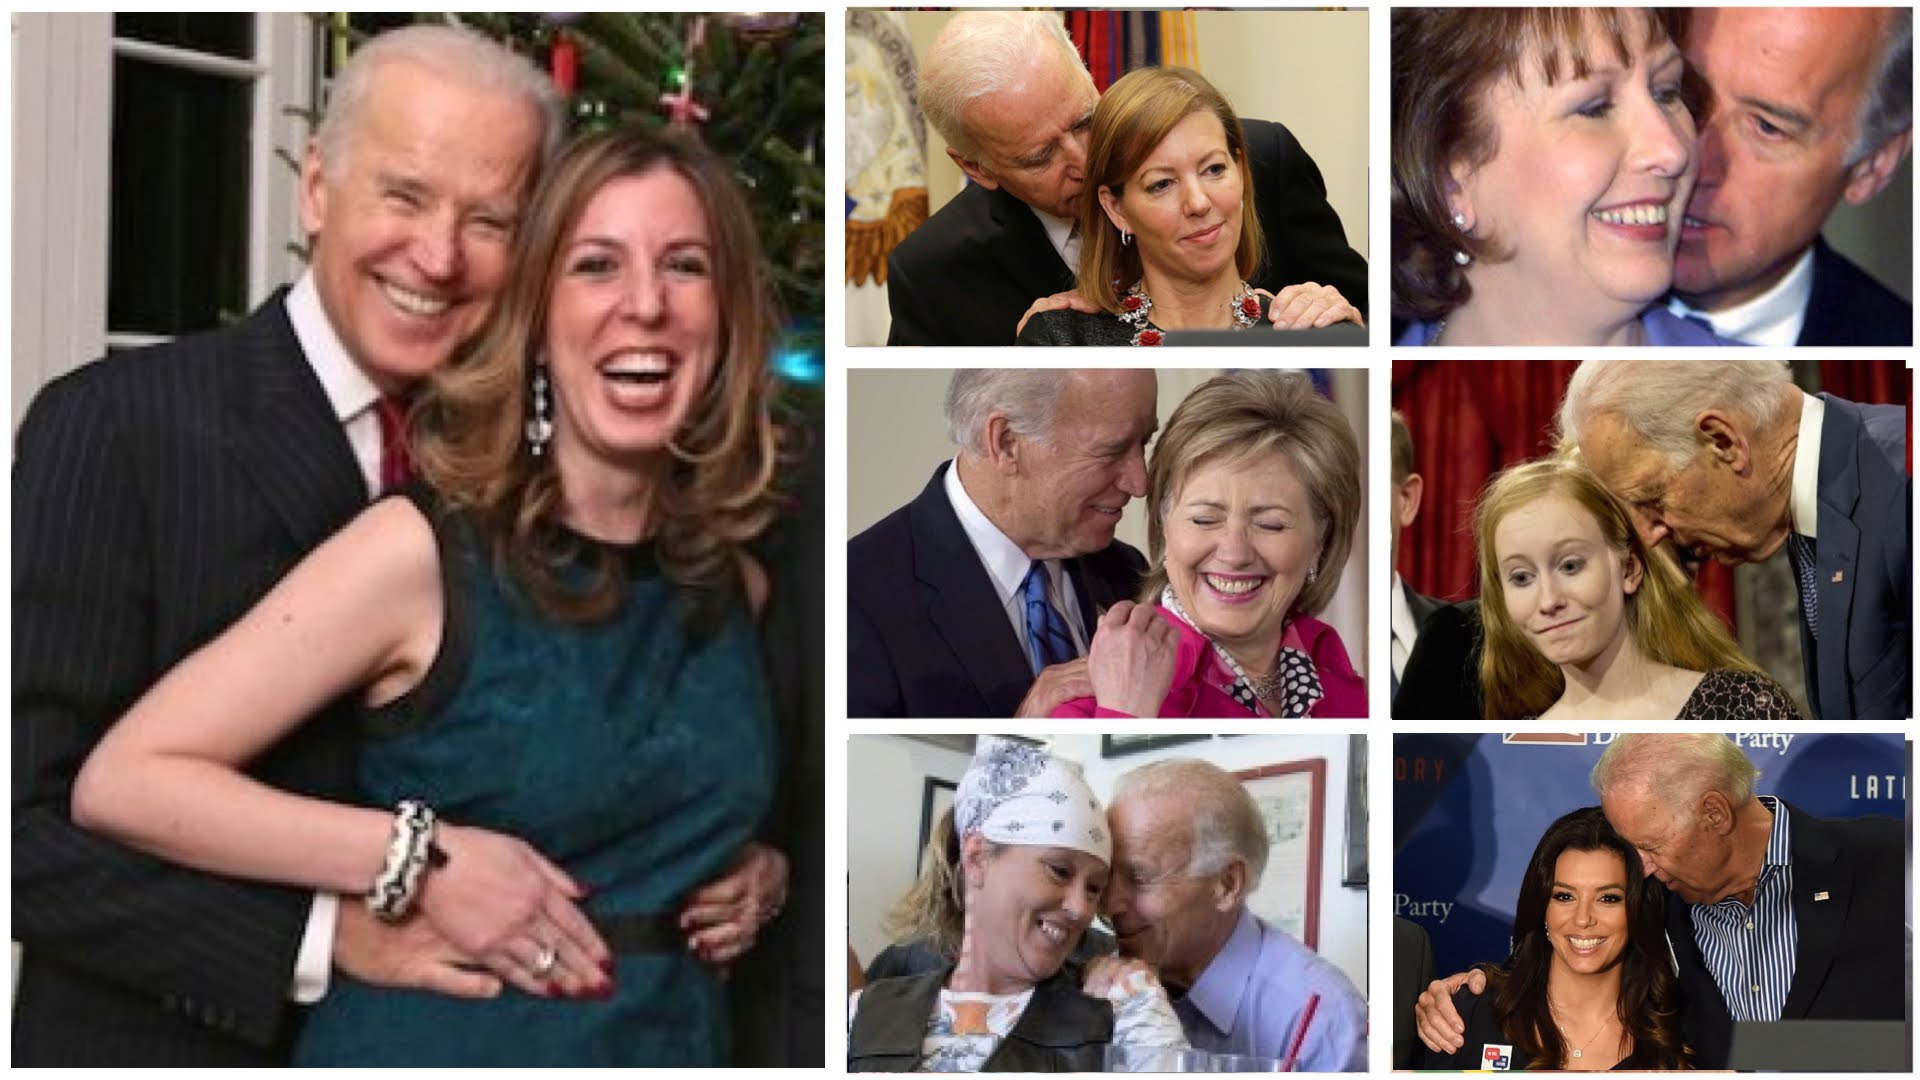 Joe Biden Pedophile Evidence